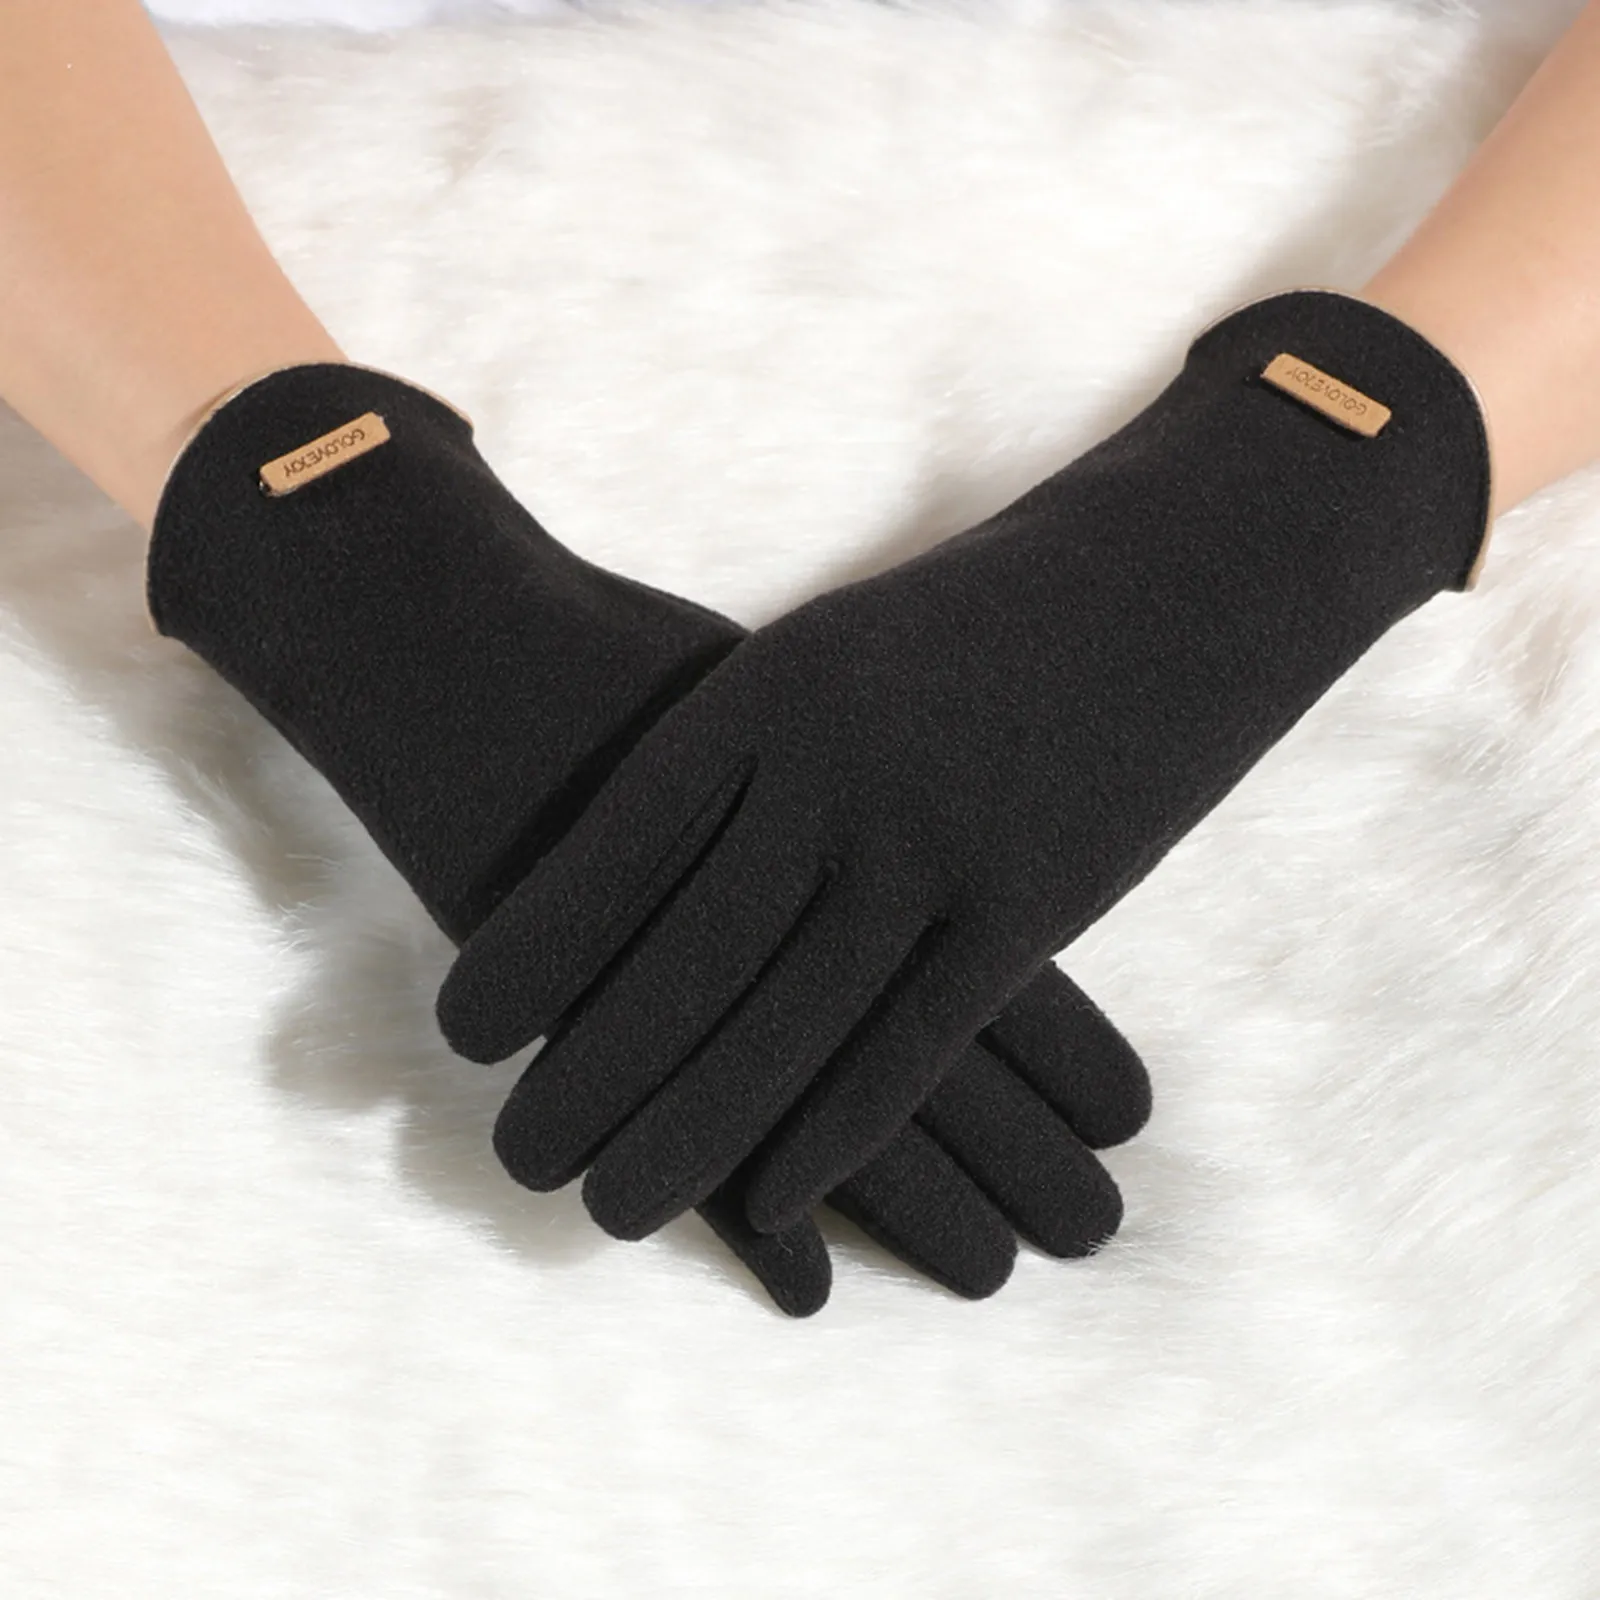 Осень И зима Новые Женские перчатки для сохранения тепла Зимой с американским цветным контрастным экраном, утолщенные, ветрозащитные и холодостойкие перчатки Изображение 2